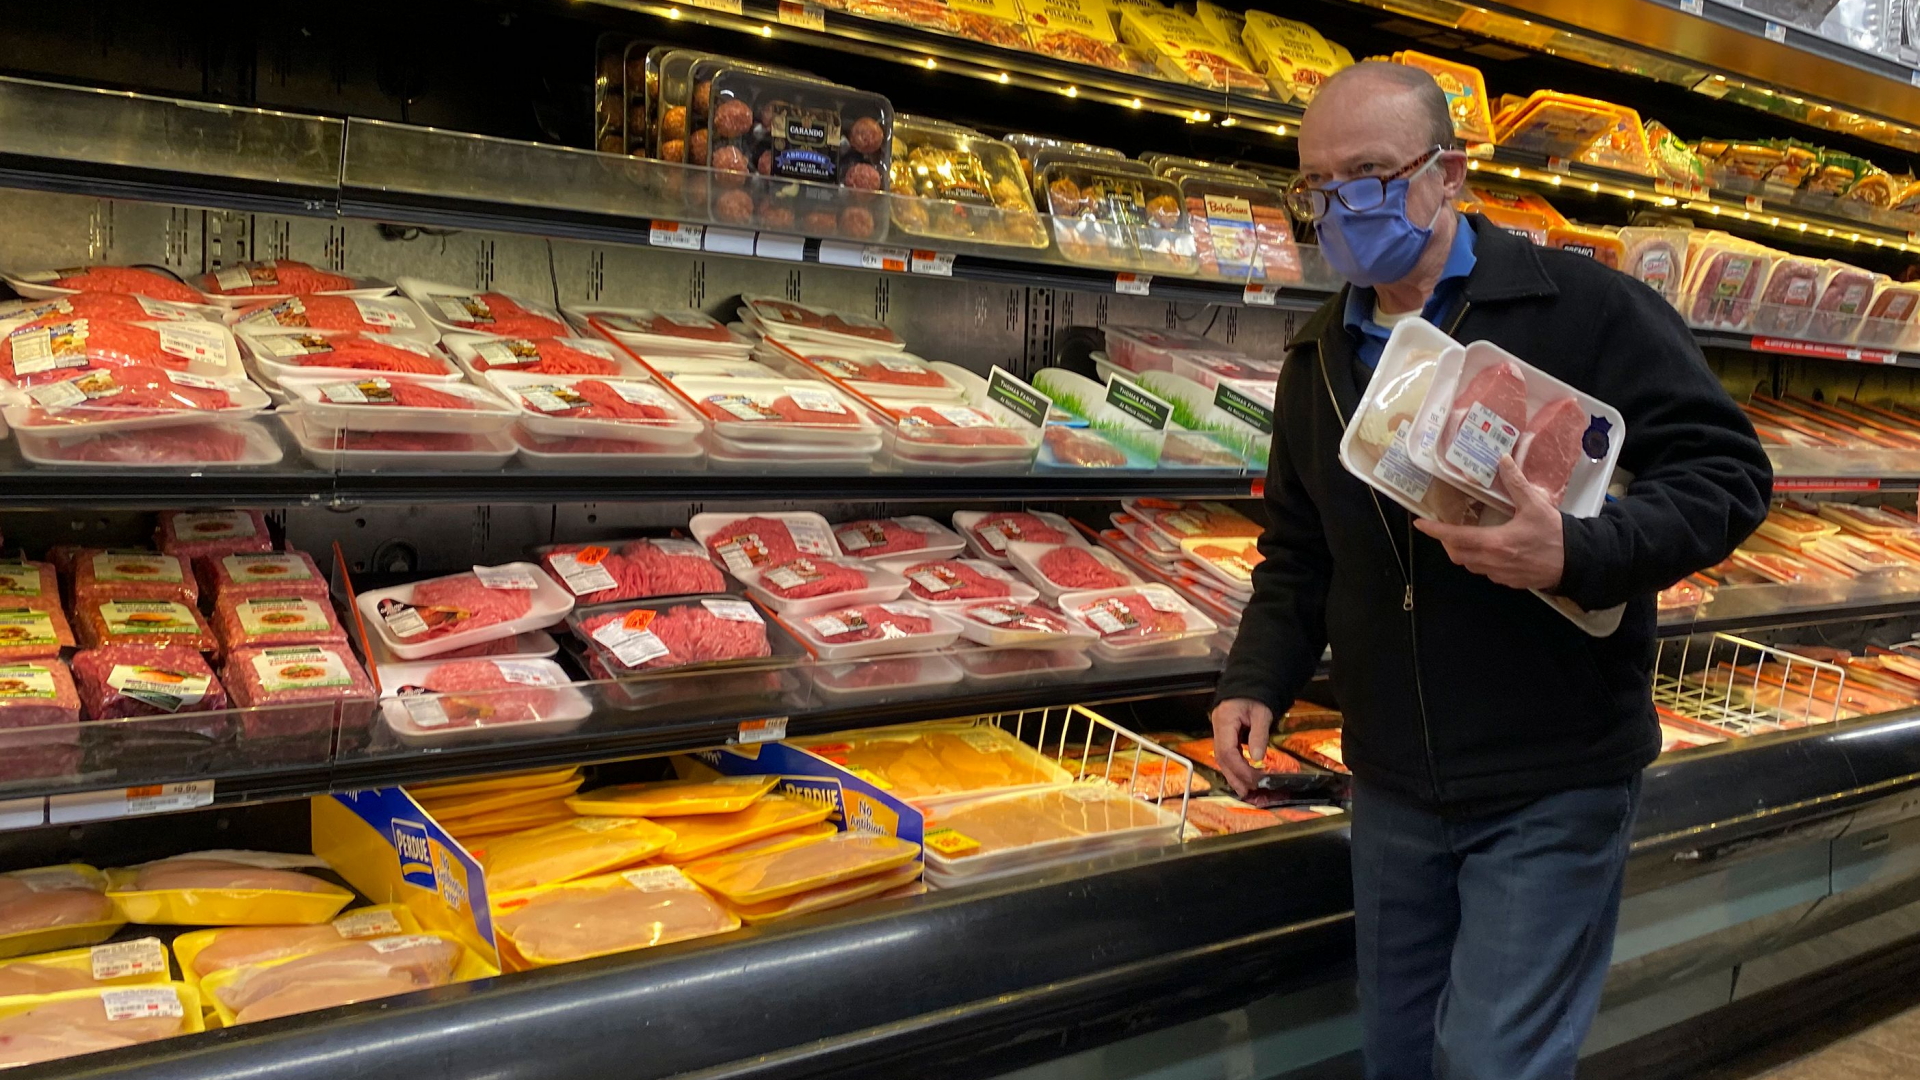 Fleisch-Kühltruhe in US-Supermarkt | JASON SZENES/EPA-EFE/Shutterstoc